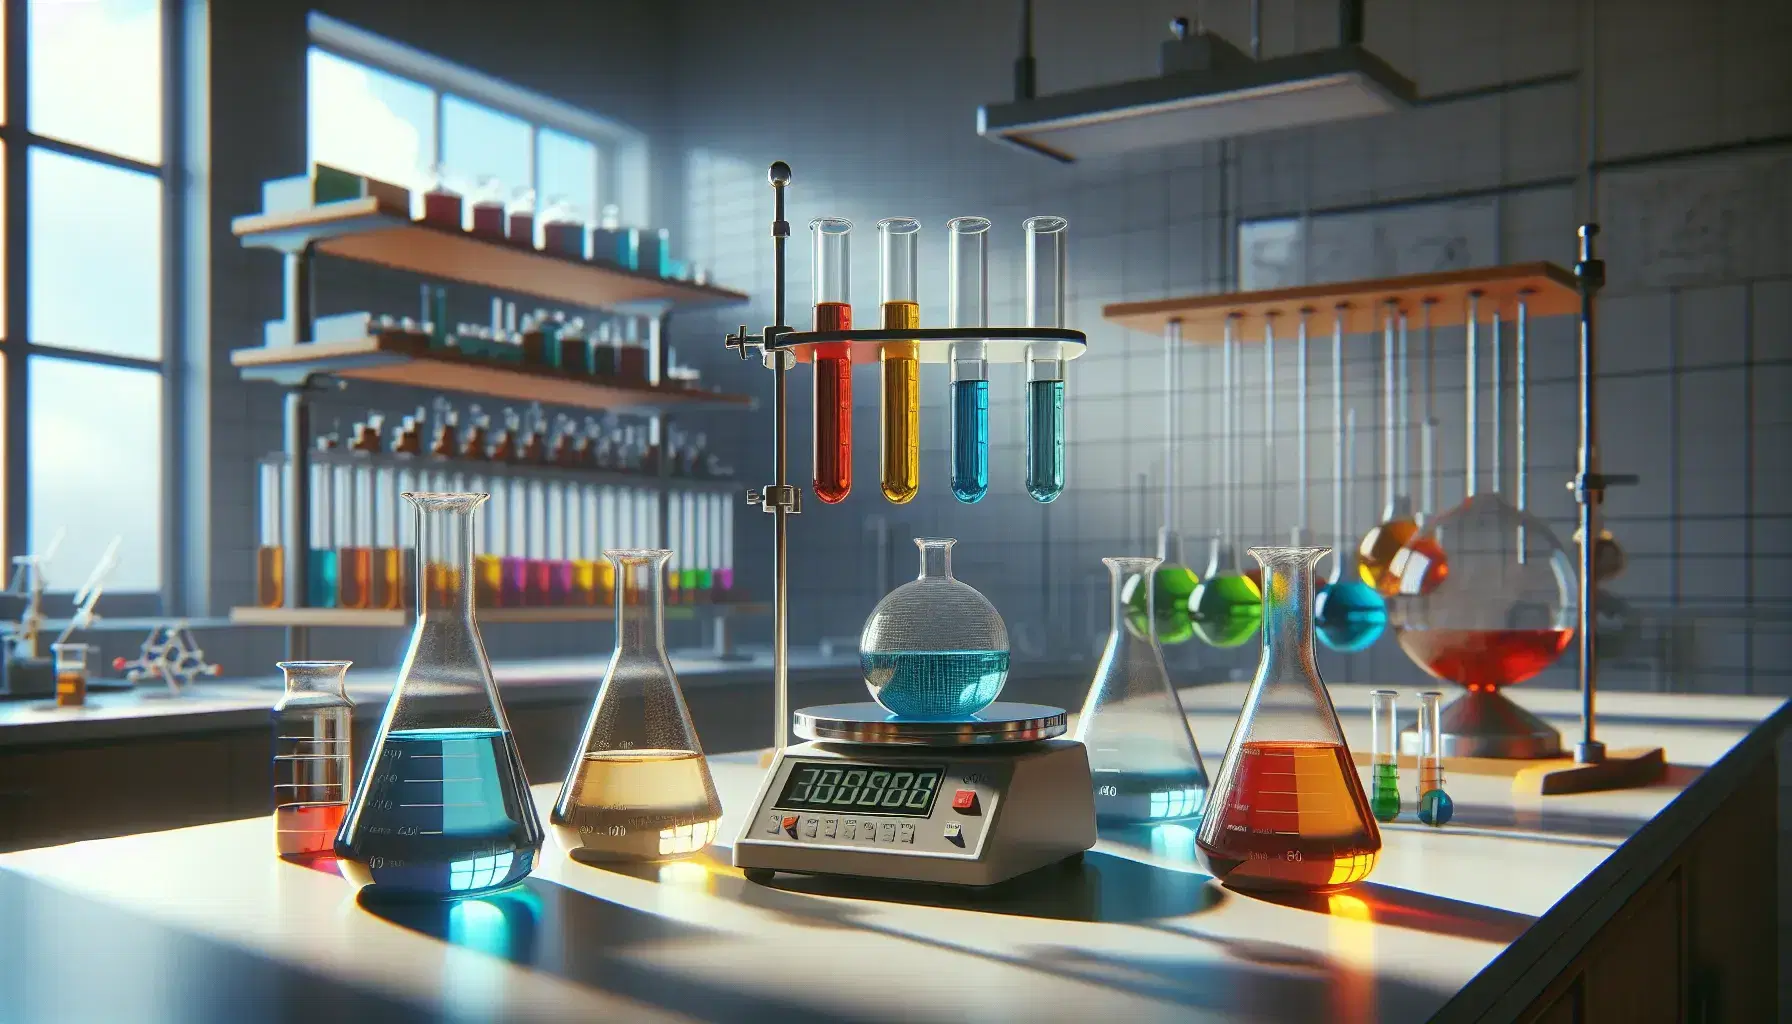 Laboratorio químico con matraces Erlenmeyer con líquidos de colores y tubos de ensayo en estante de madera, junto a balanza analítica apagada.